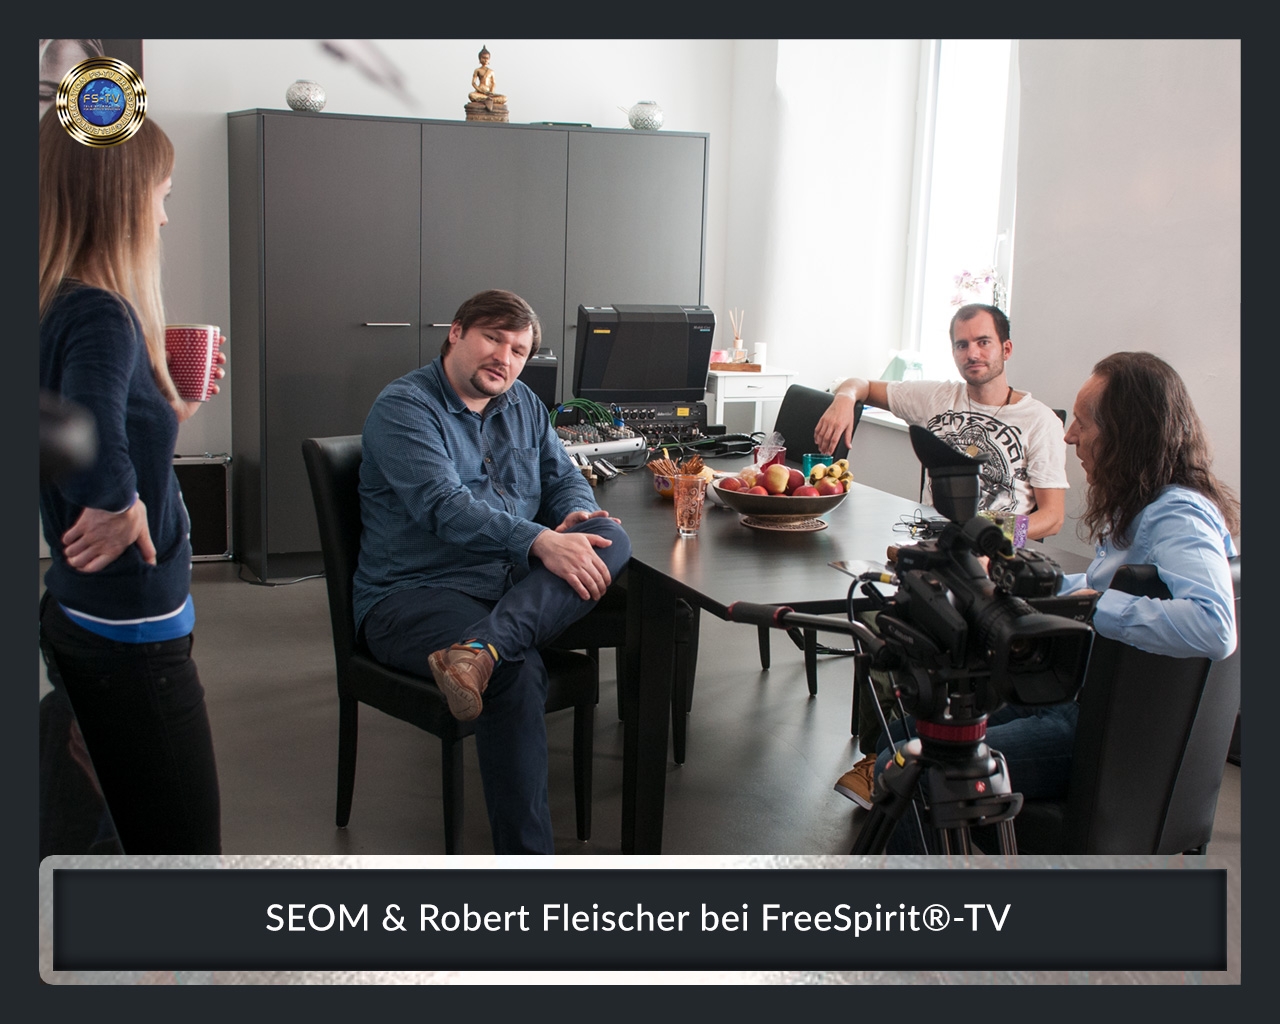 FS-TV-Bildergallerie-SEOM-Robert-Fleischer2